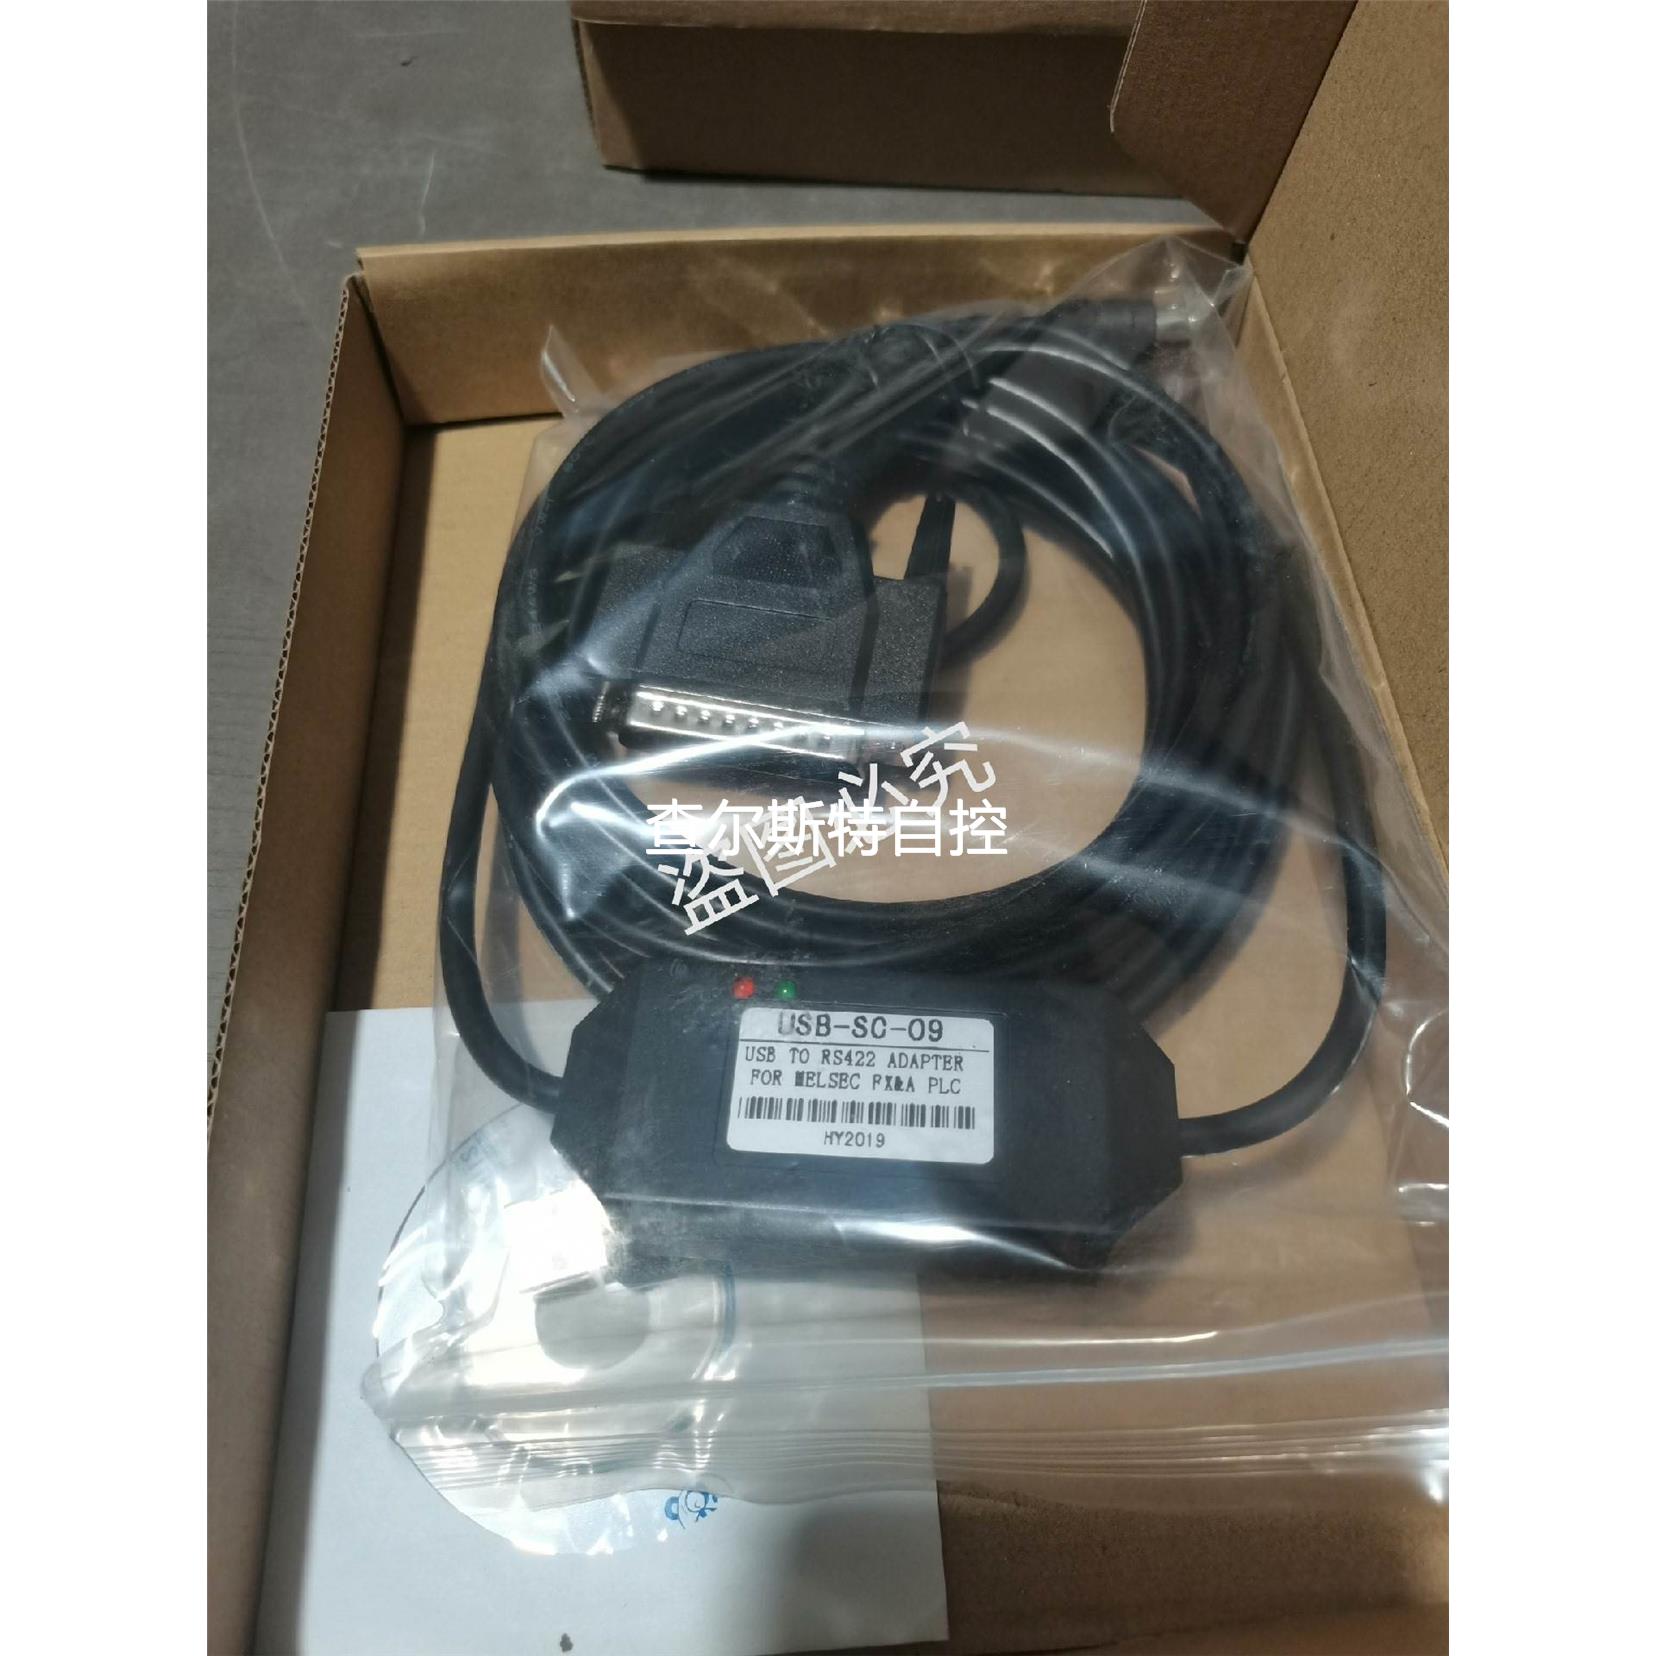 询价PLC数据线FX3U通讯下载编程电缆USB-SC-09议价